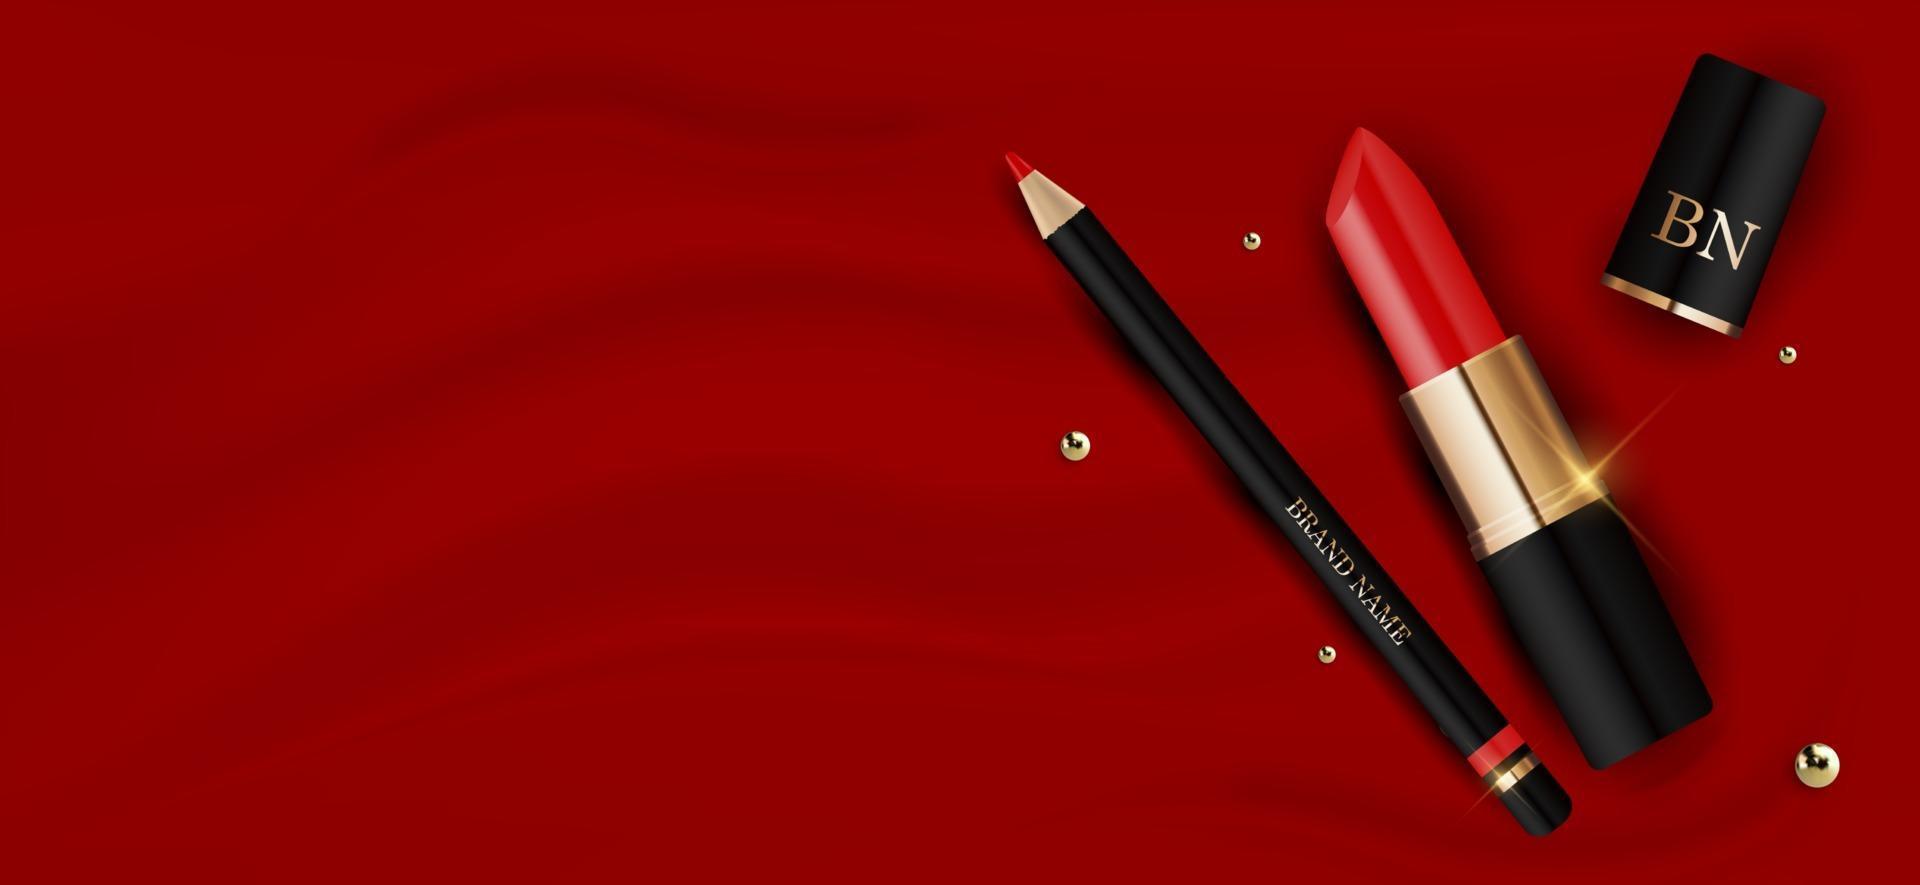 Batom vermelho realista 3D e lápis no modelo de design de seda vermelha de produtos de cosméticos da moda vetor